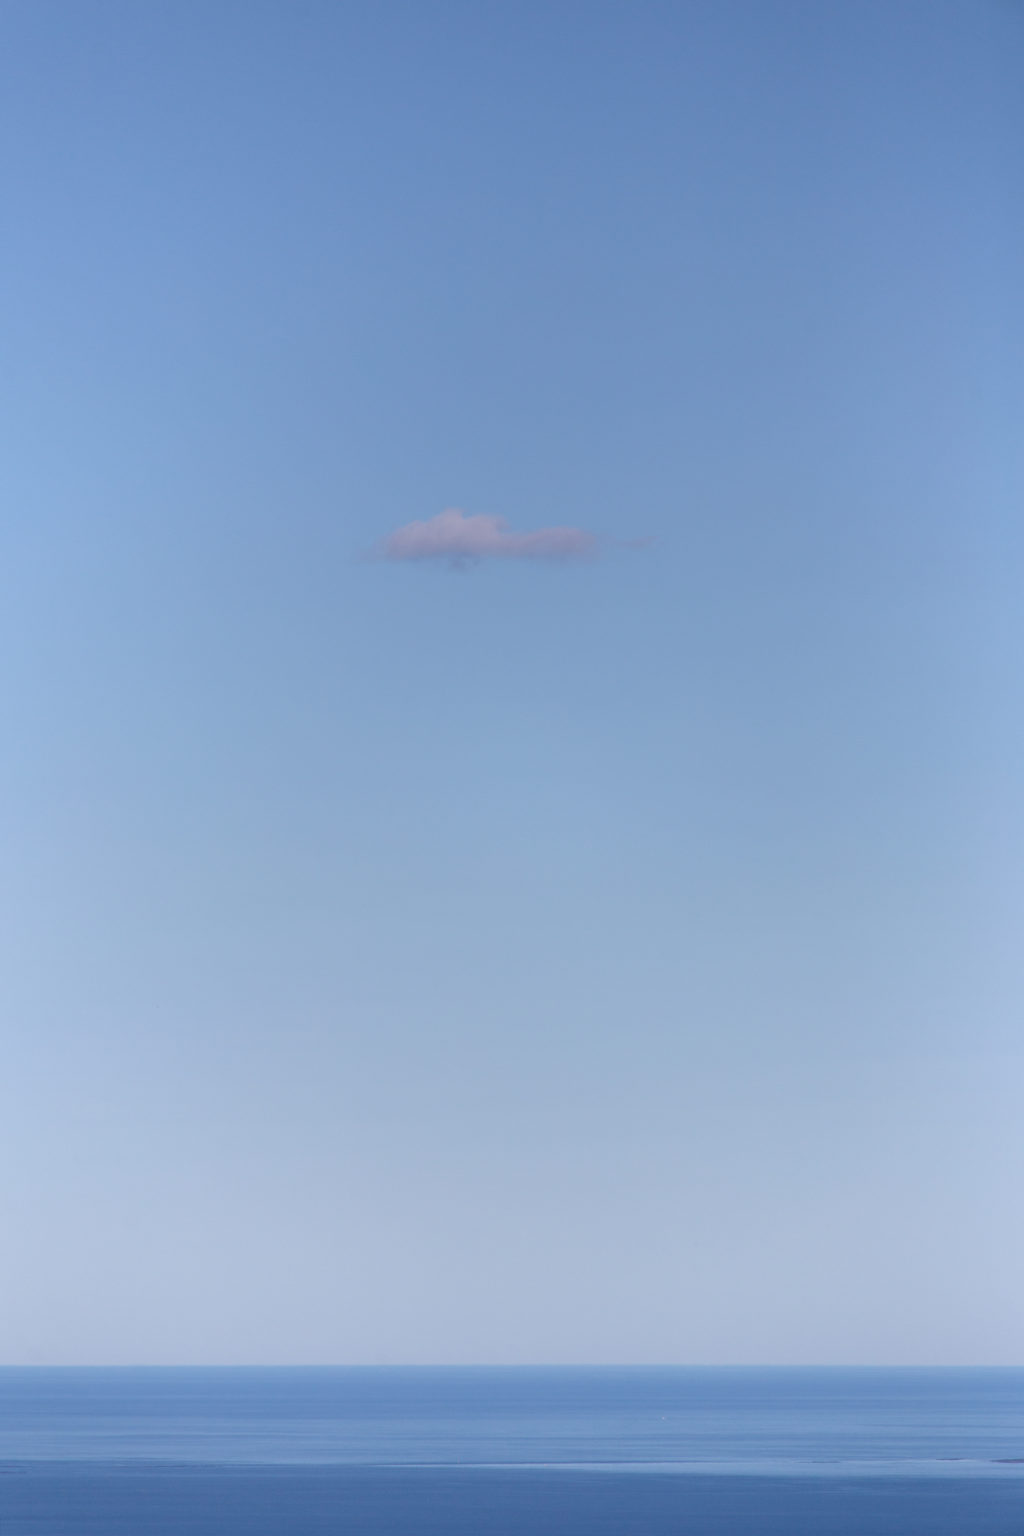 Single Cloud in Blue Sky